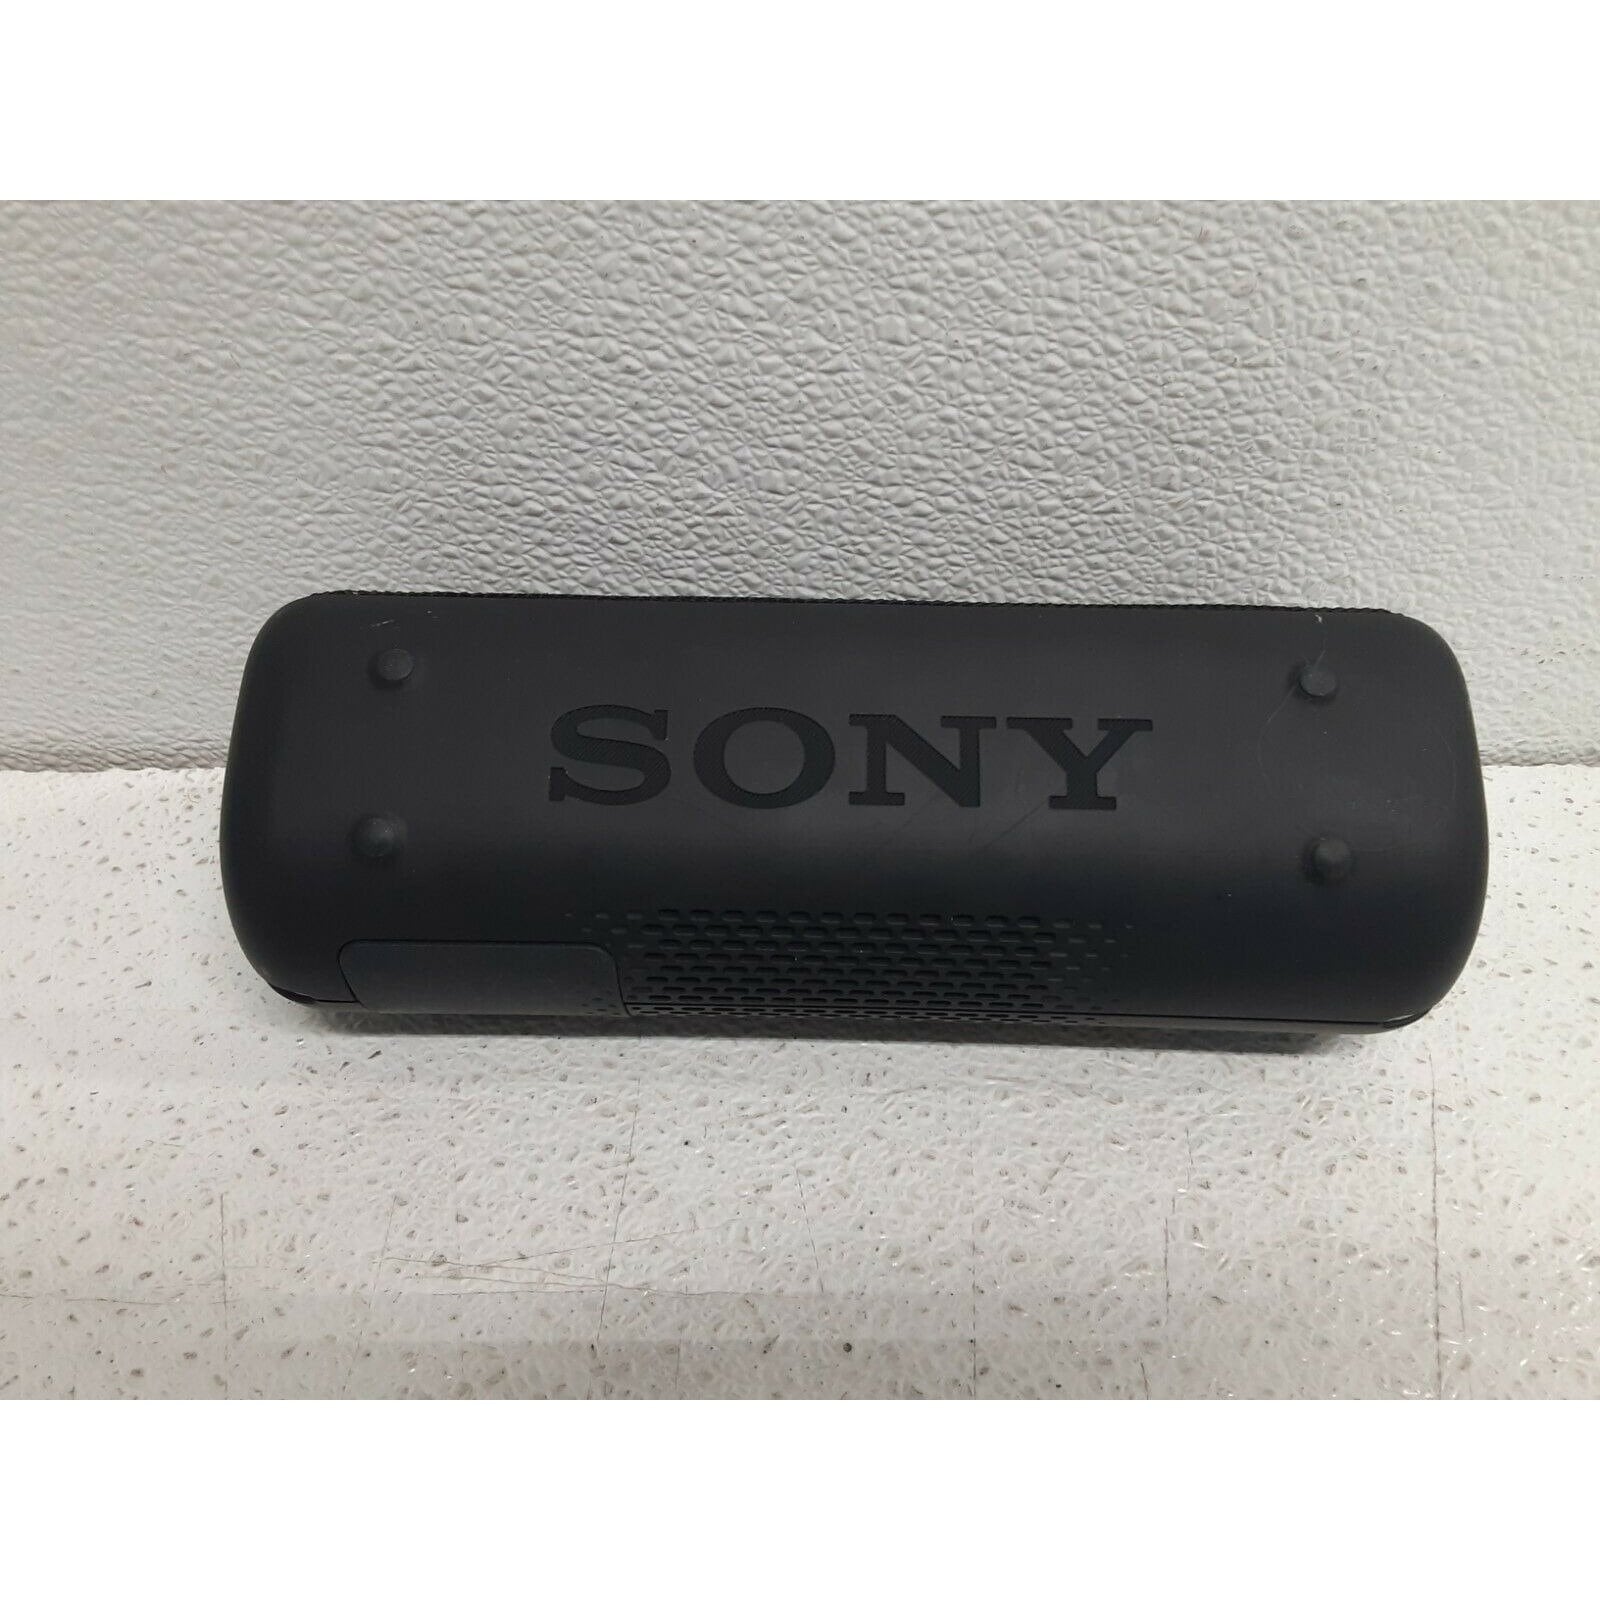 Sony SRS-XB32/B Portable Waterproof Bluetooth Speaker - Black